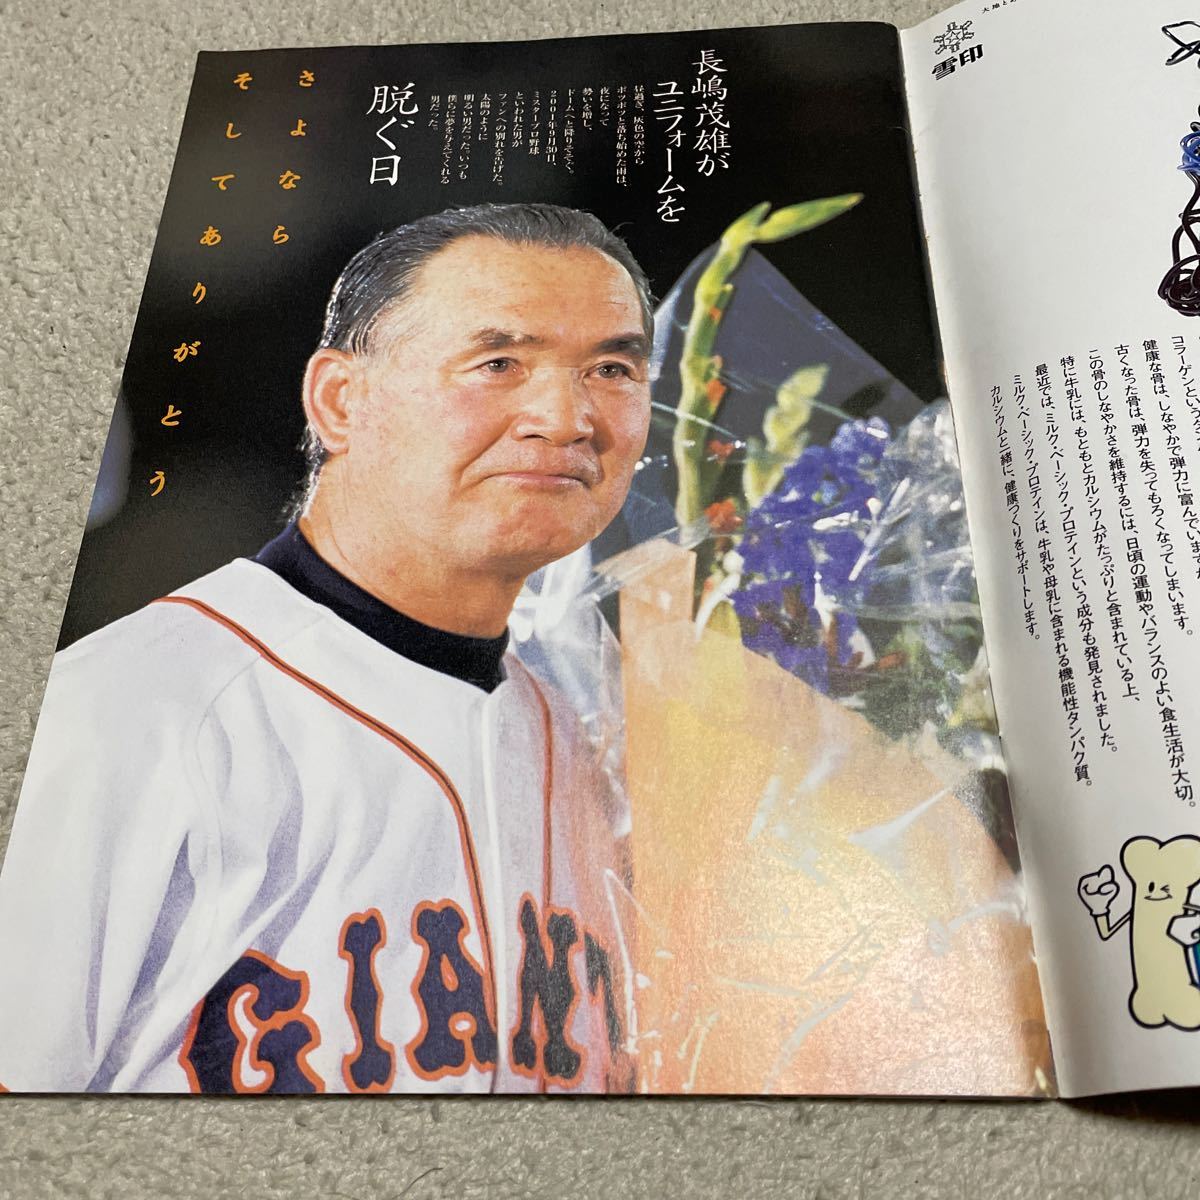 週間ベースボール増刊号さよならミスタージャイアンツ長嶋茂雄の画像3